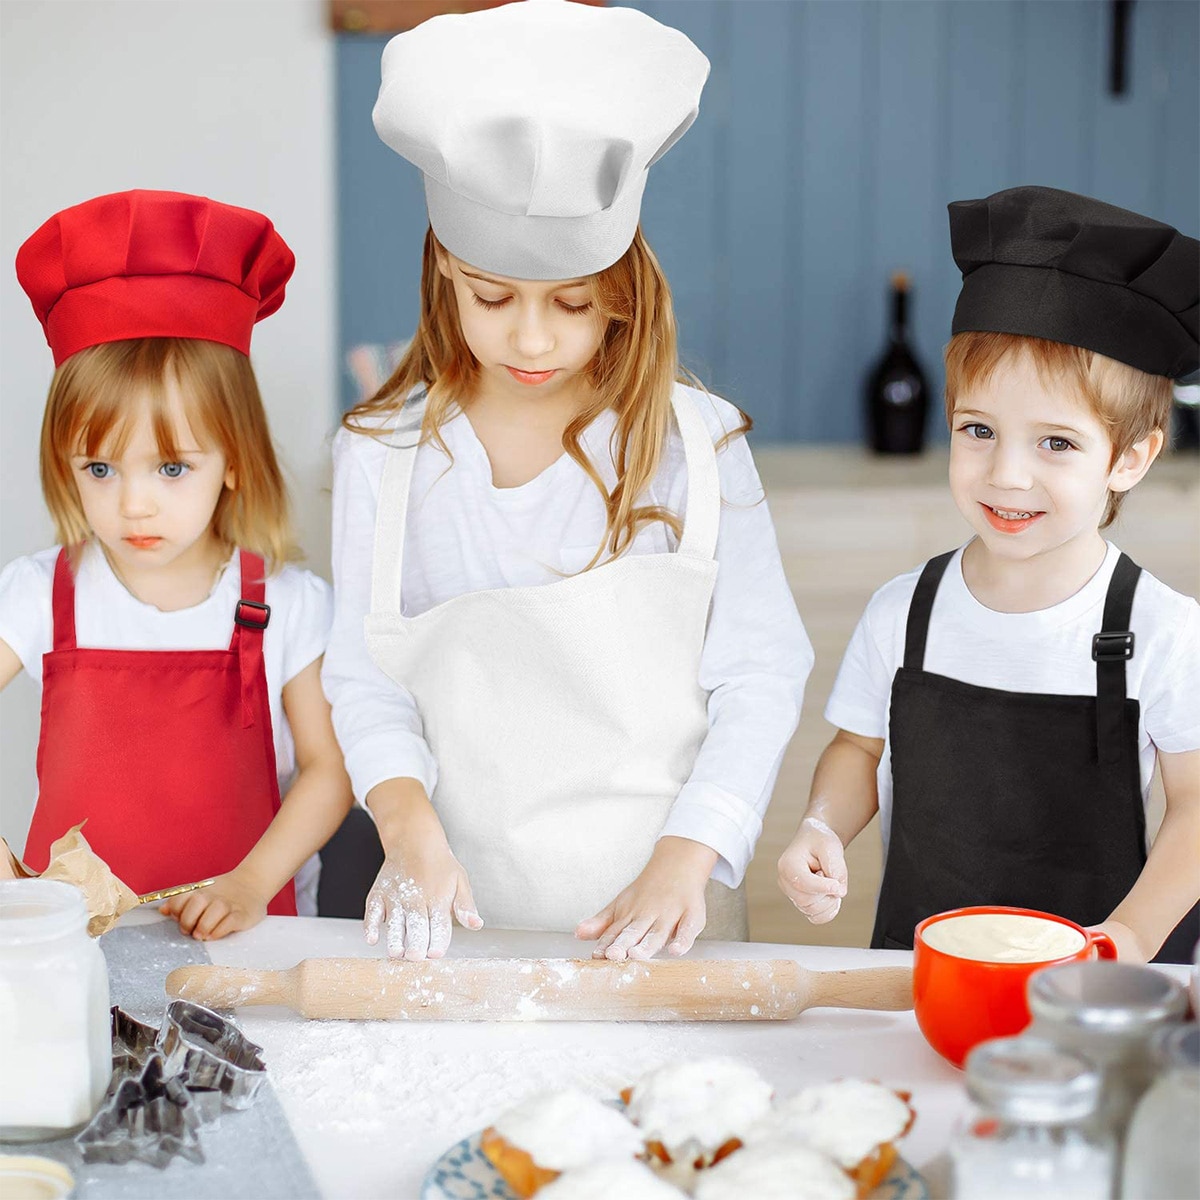 Børn forlomme bib forklæde kid drenge piger forklæde køkken håndværk børn forklæde barn maleri madlavning